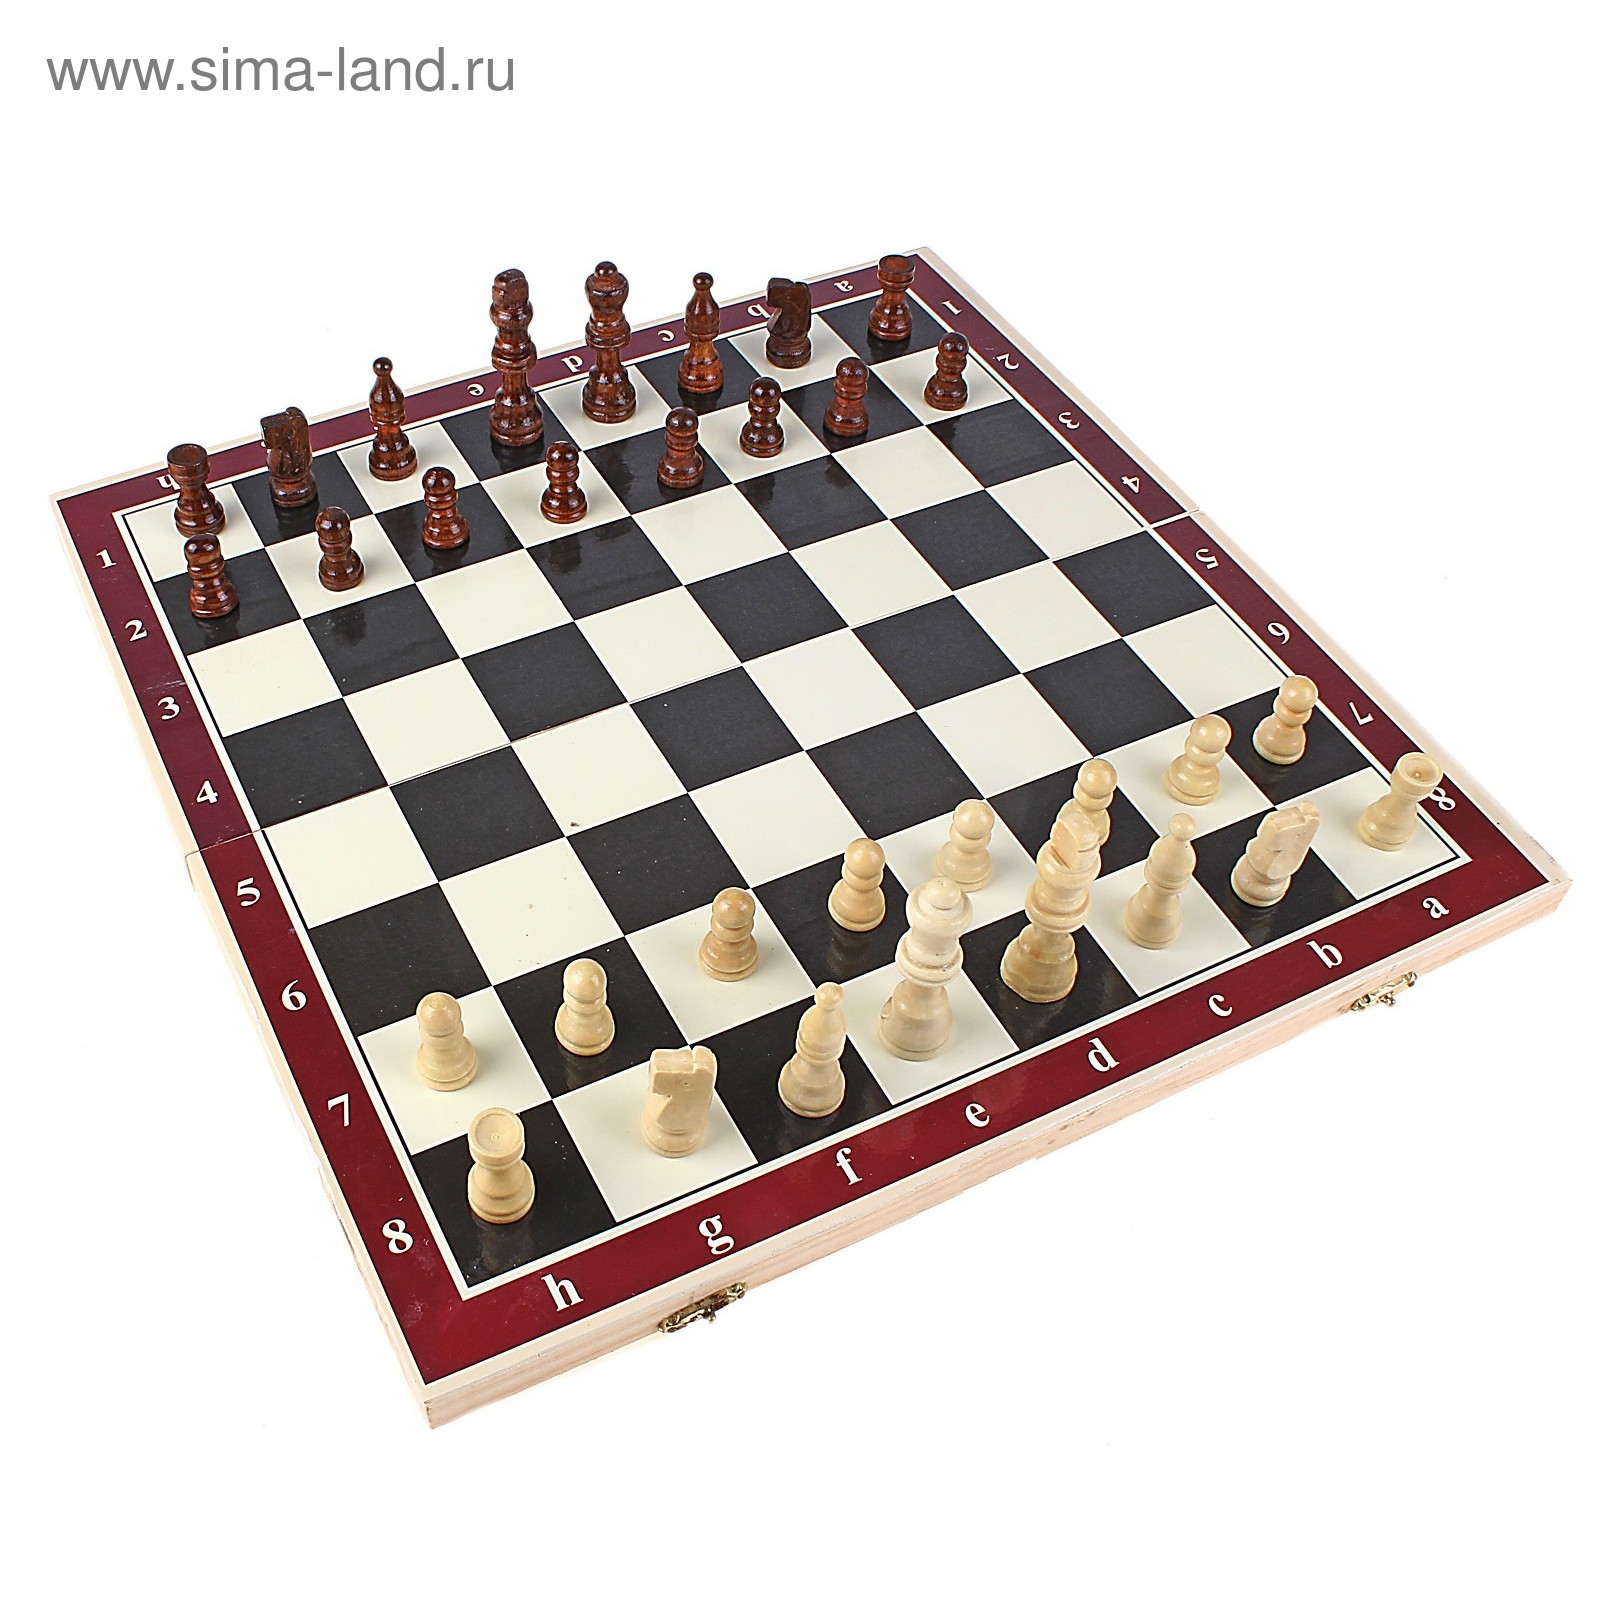 Шахматы настольные, поле 24 × 24 см, УЦЕНКА (незначительные перекосы доски)